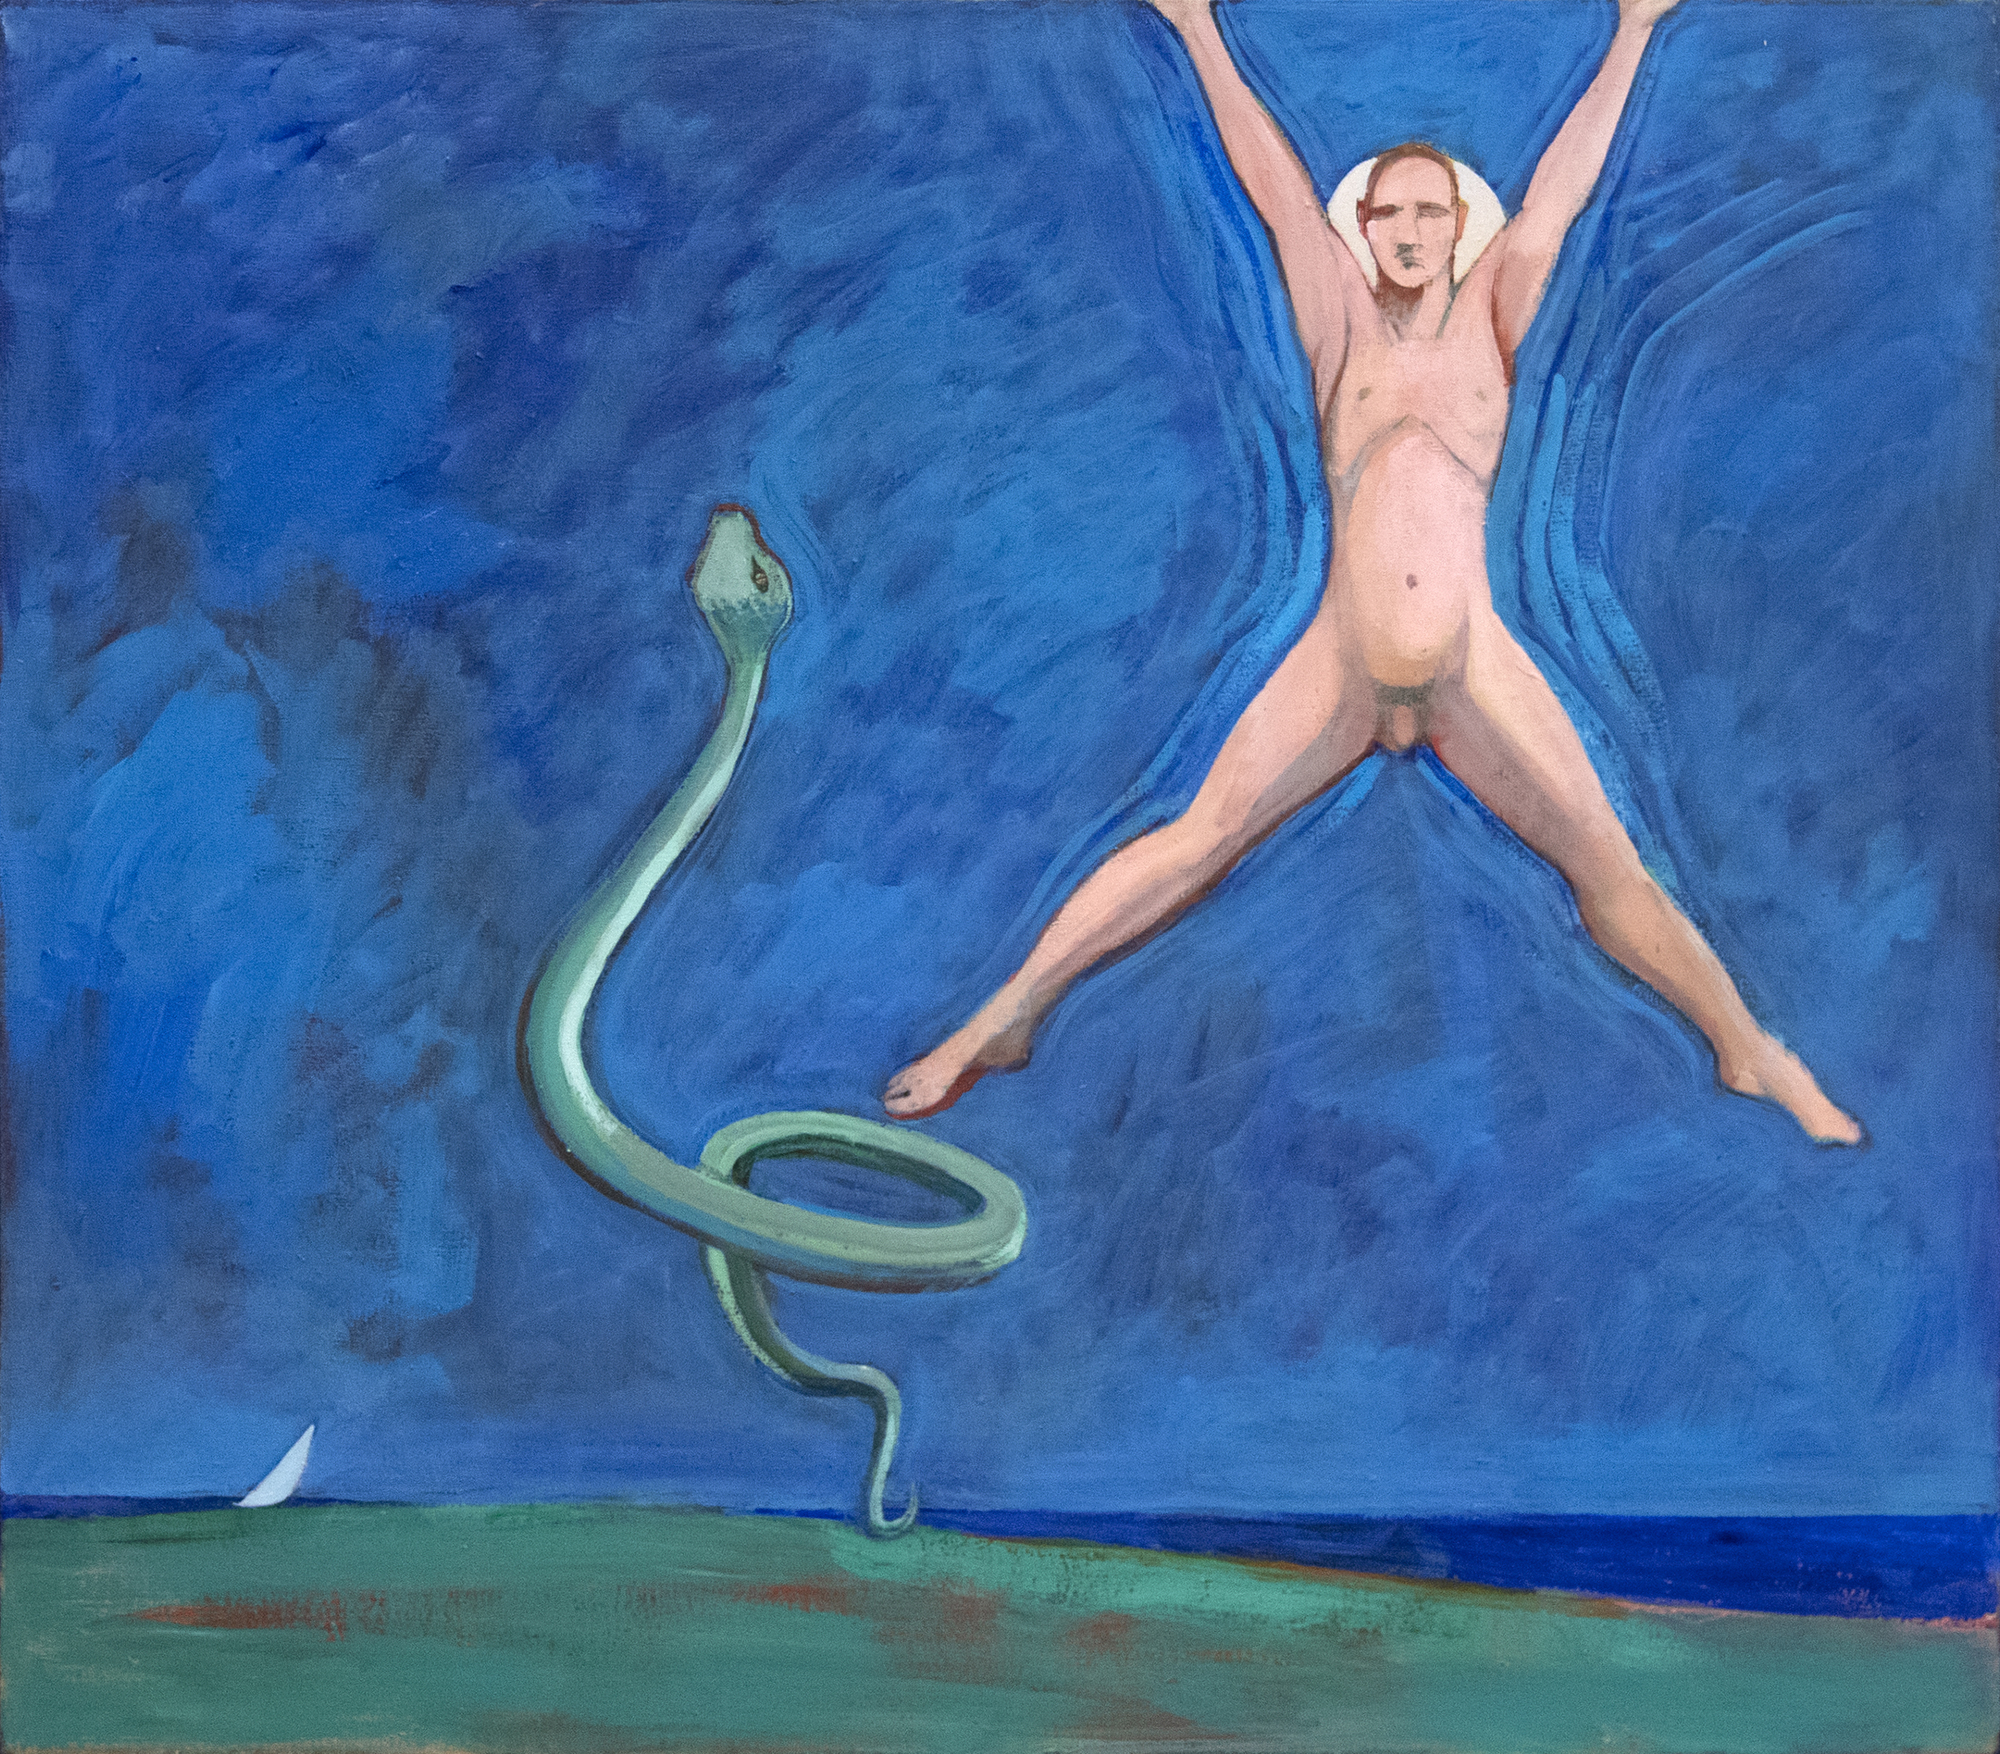 WILLIAM THEOPHILUS BRAUN - Ohne Titel (Gemälde mit Jumping Man und Snake) - Acryl auf Leinwand - 38 x 42 in.